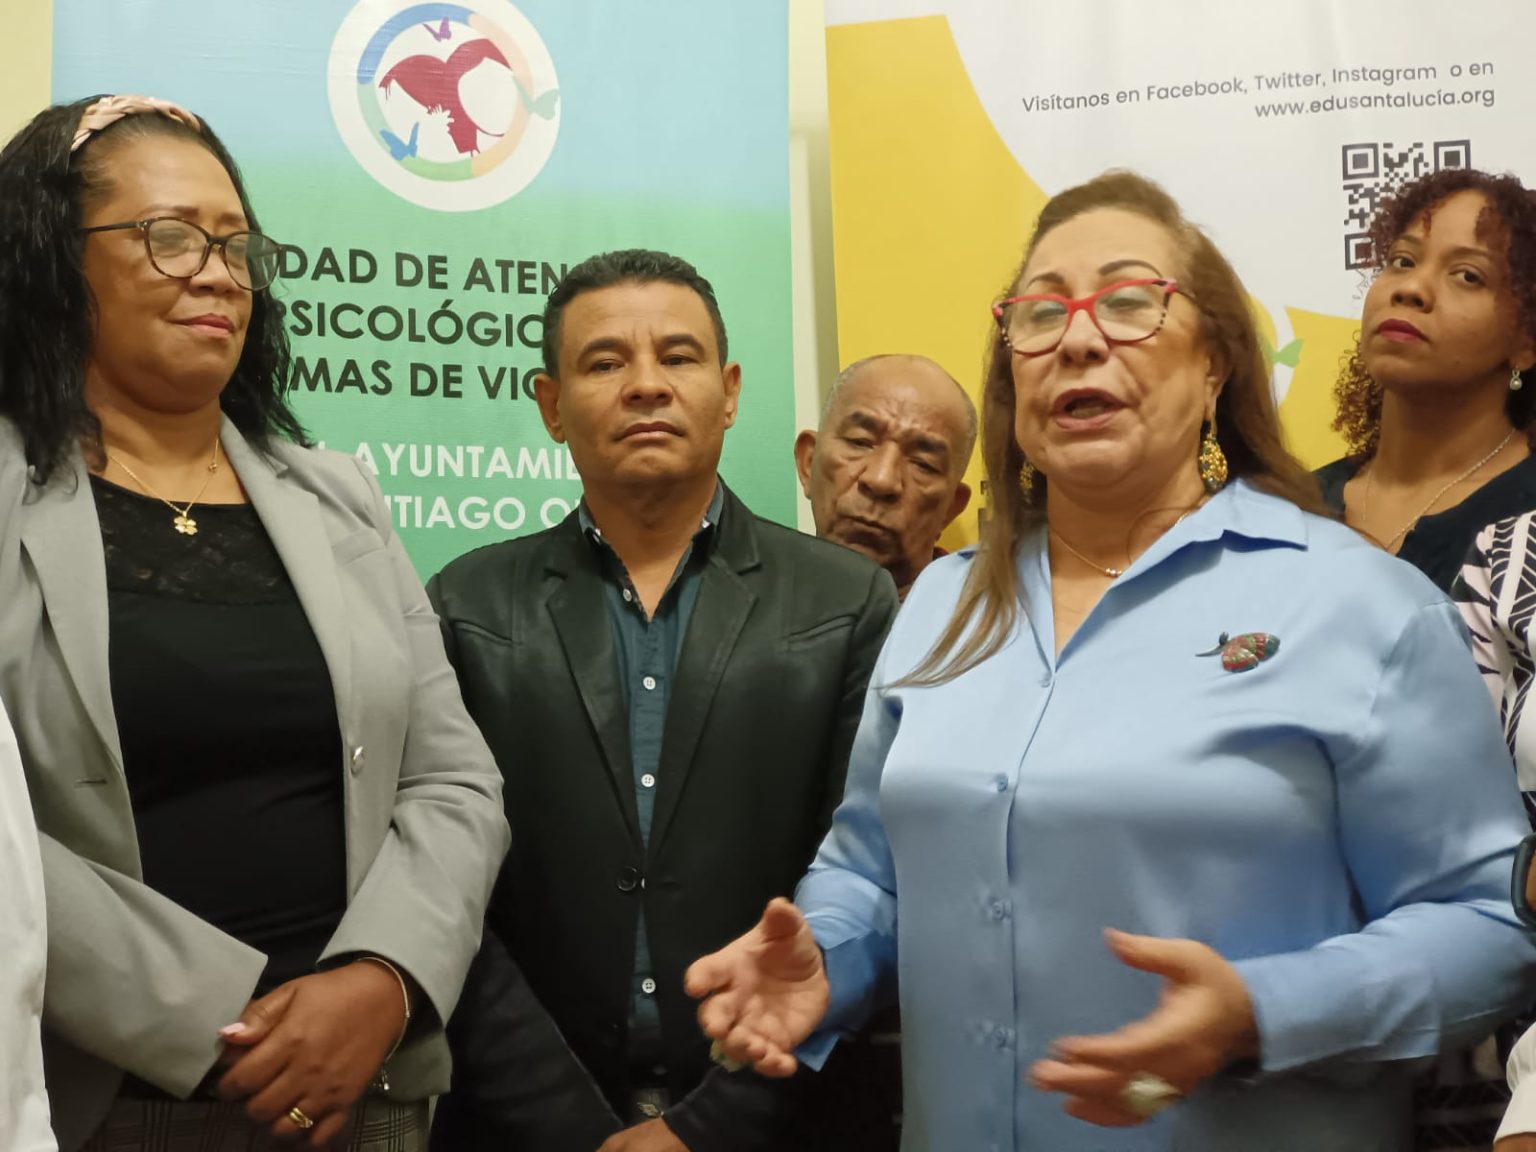 Santiago Oeste inaugura un servicio de atencion psicologica a victimas de violencia